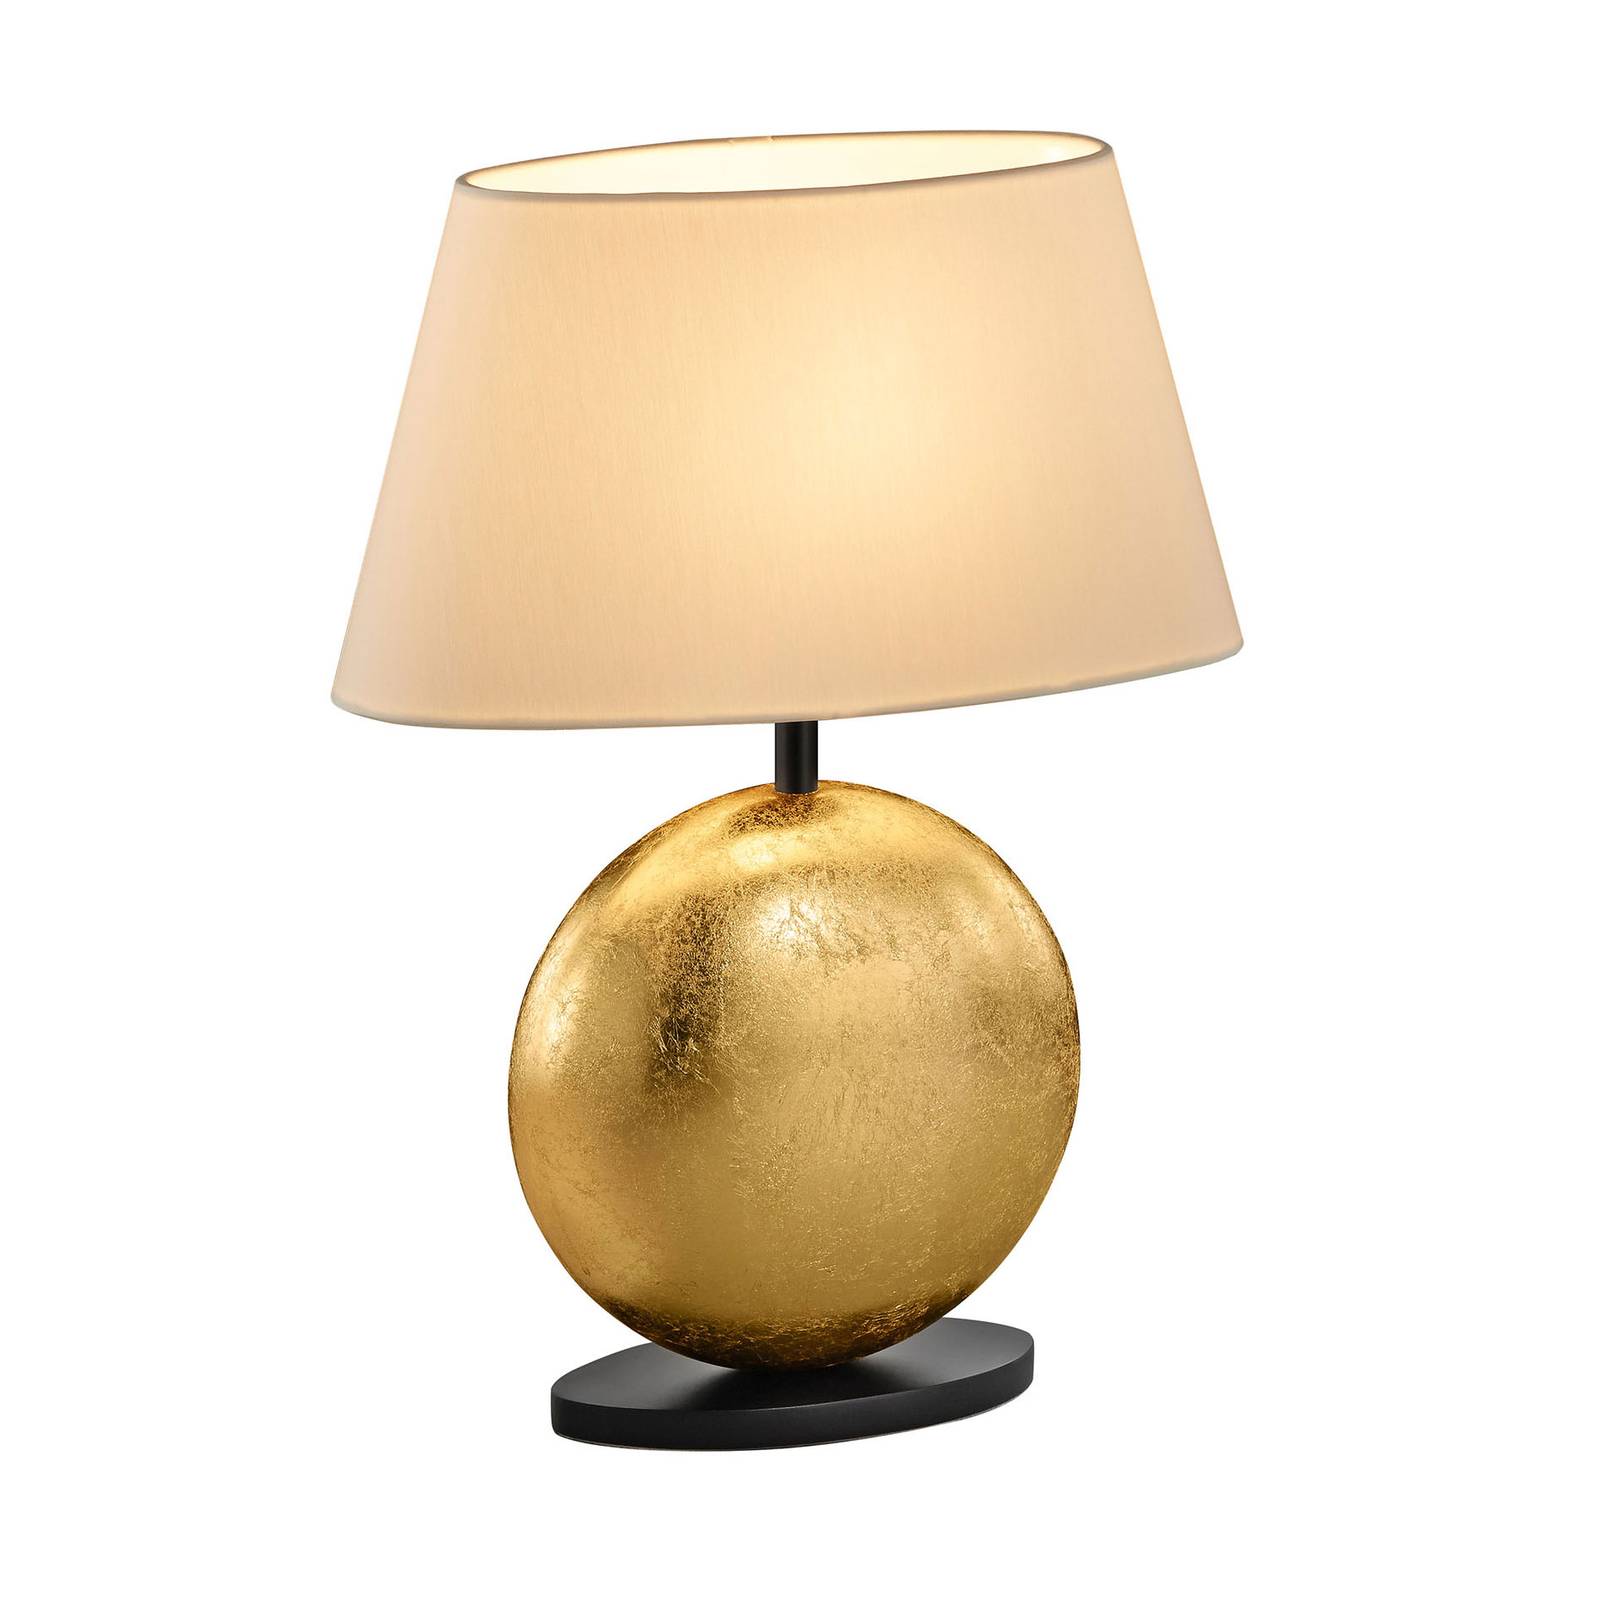 BANKAMP Mali bordlampe, creme/guld, højde 41cm